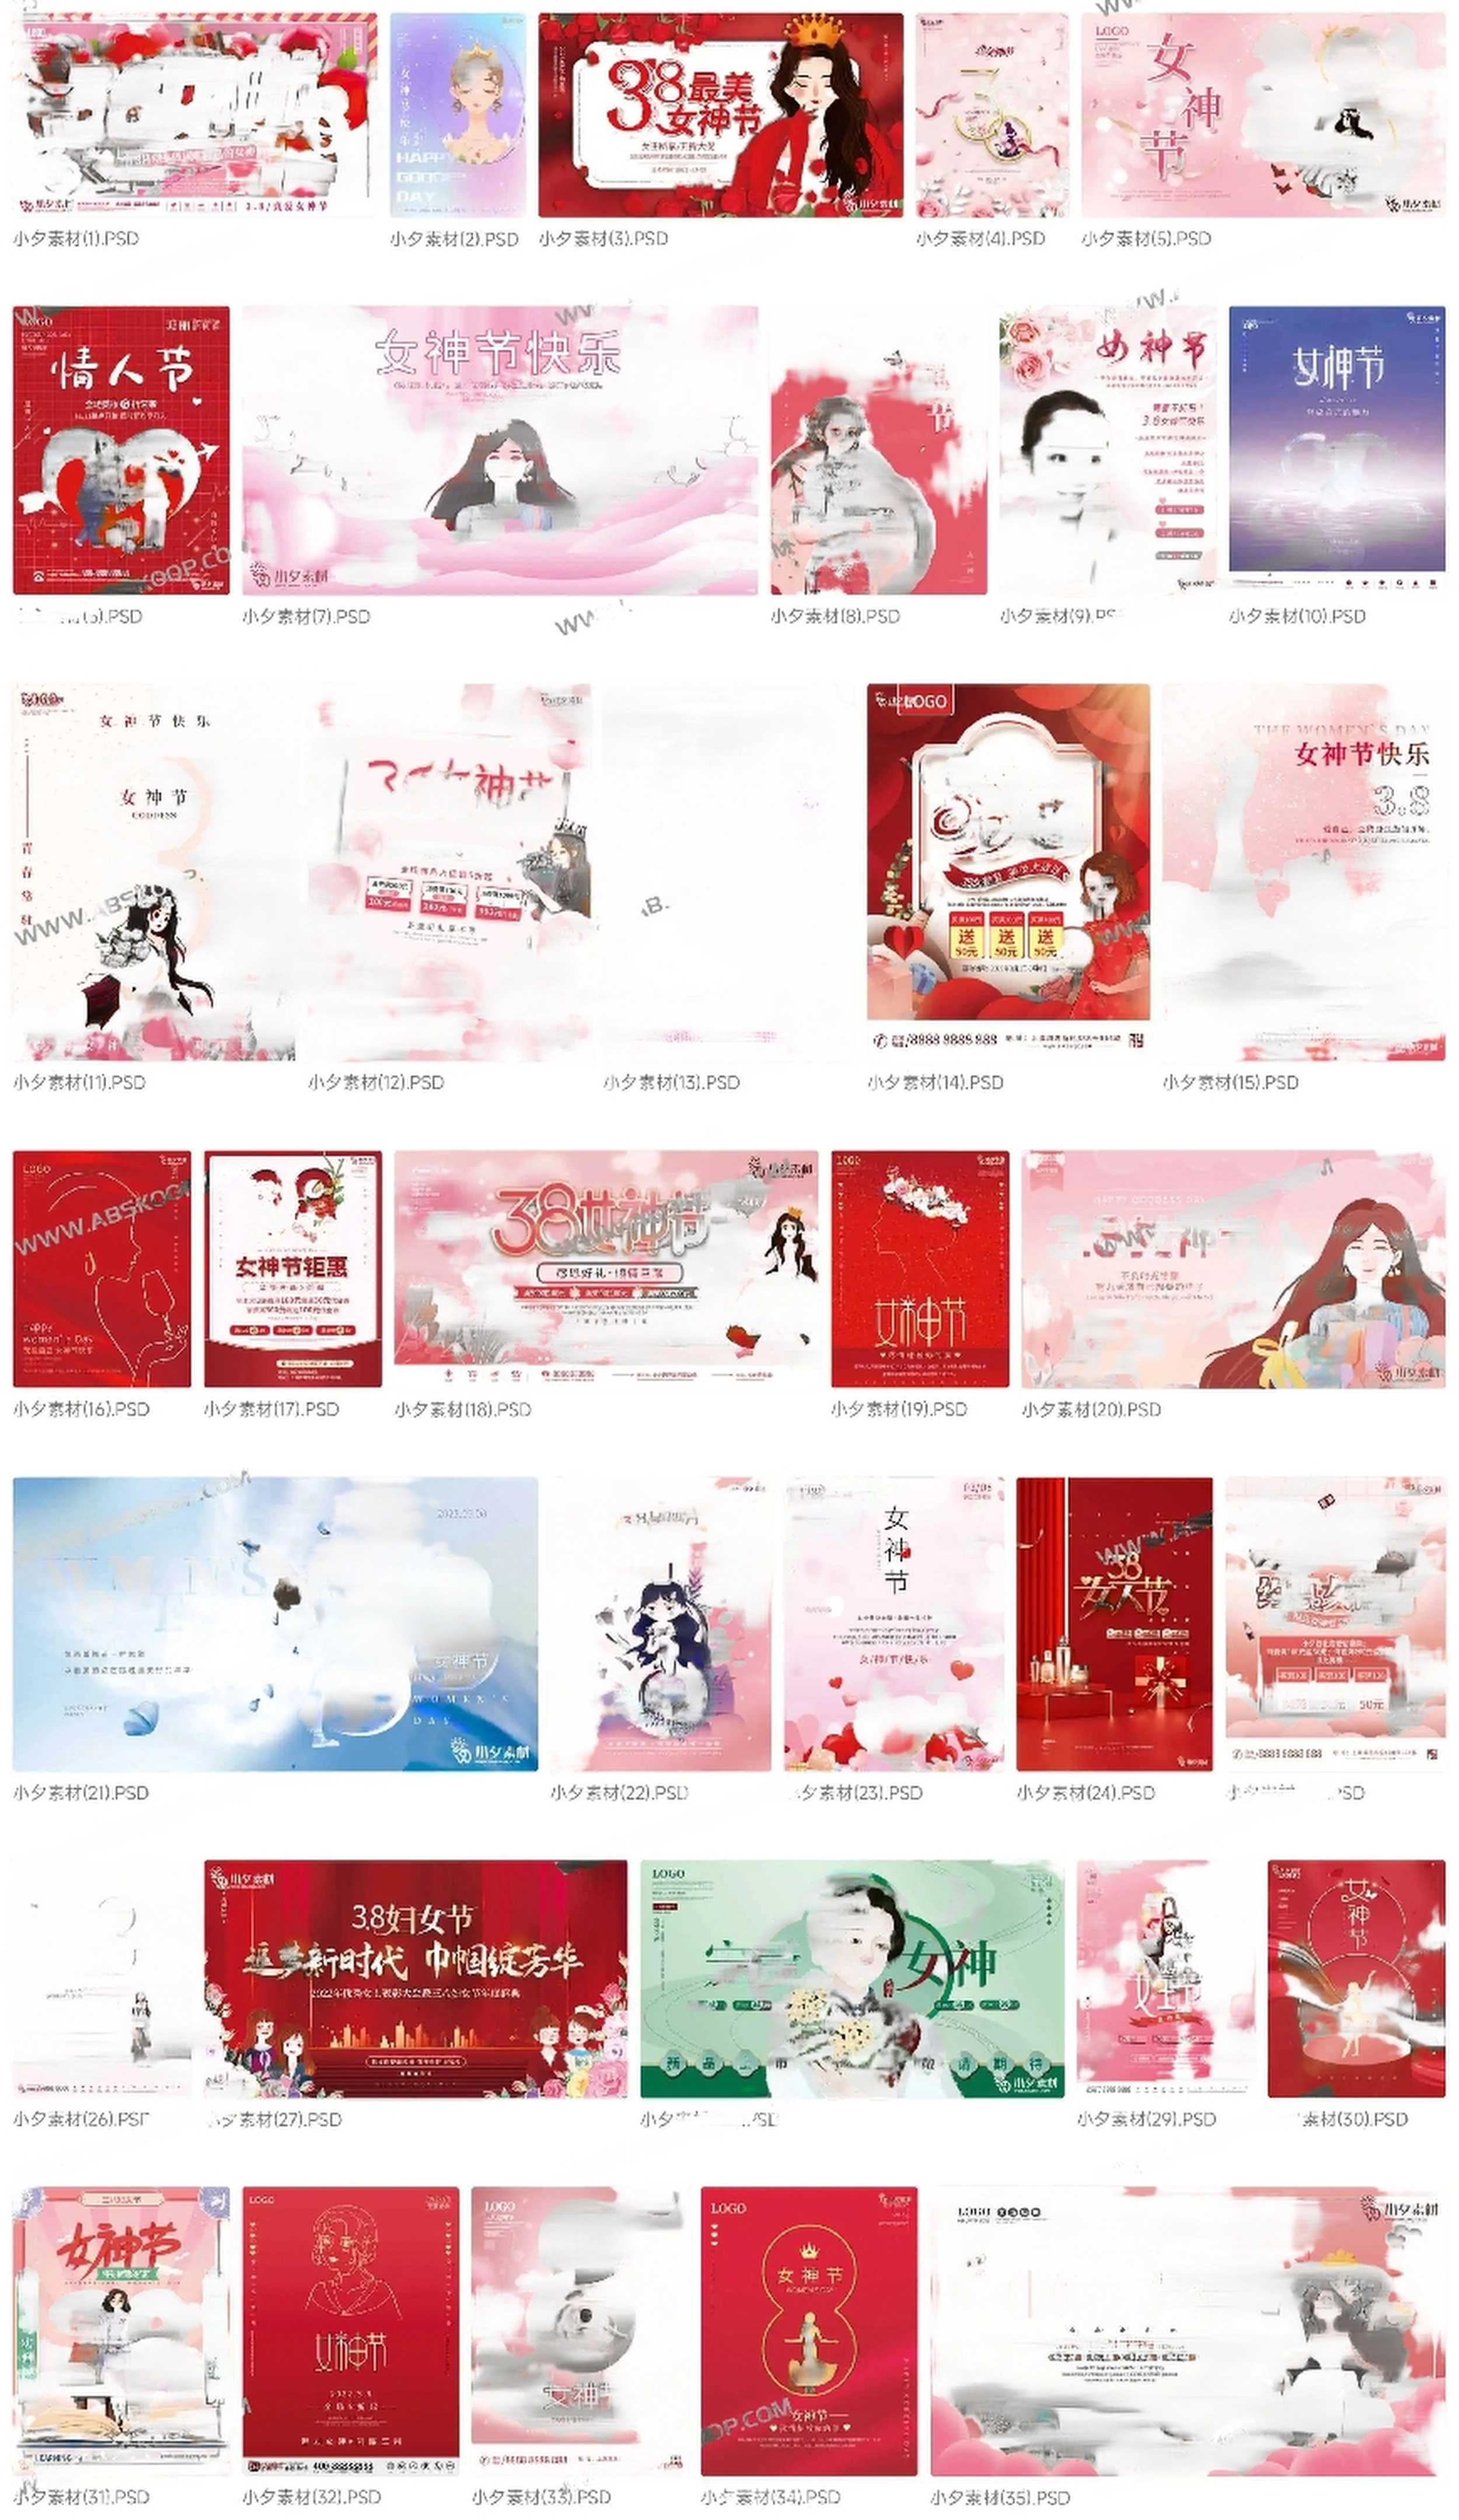 三八 38 妇女节女神女王节商场电商宣传促销节日海报模板 PSD 素材